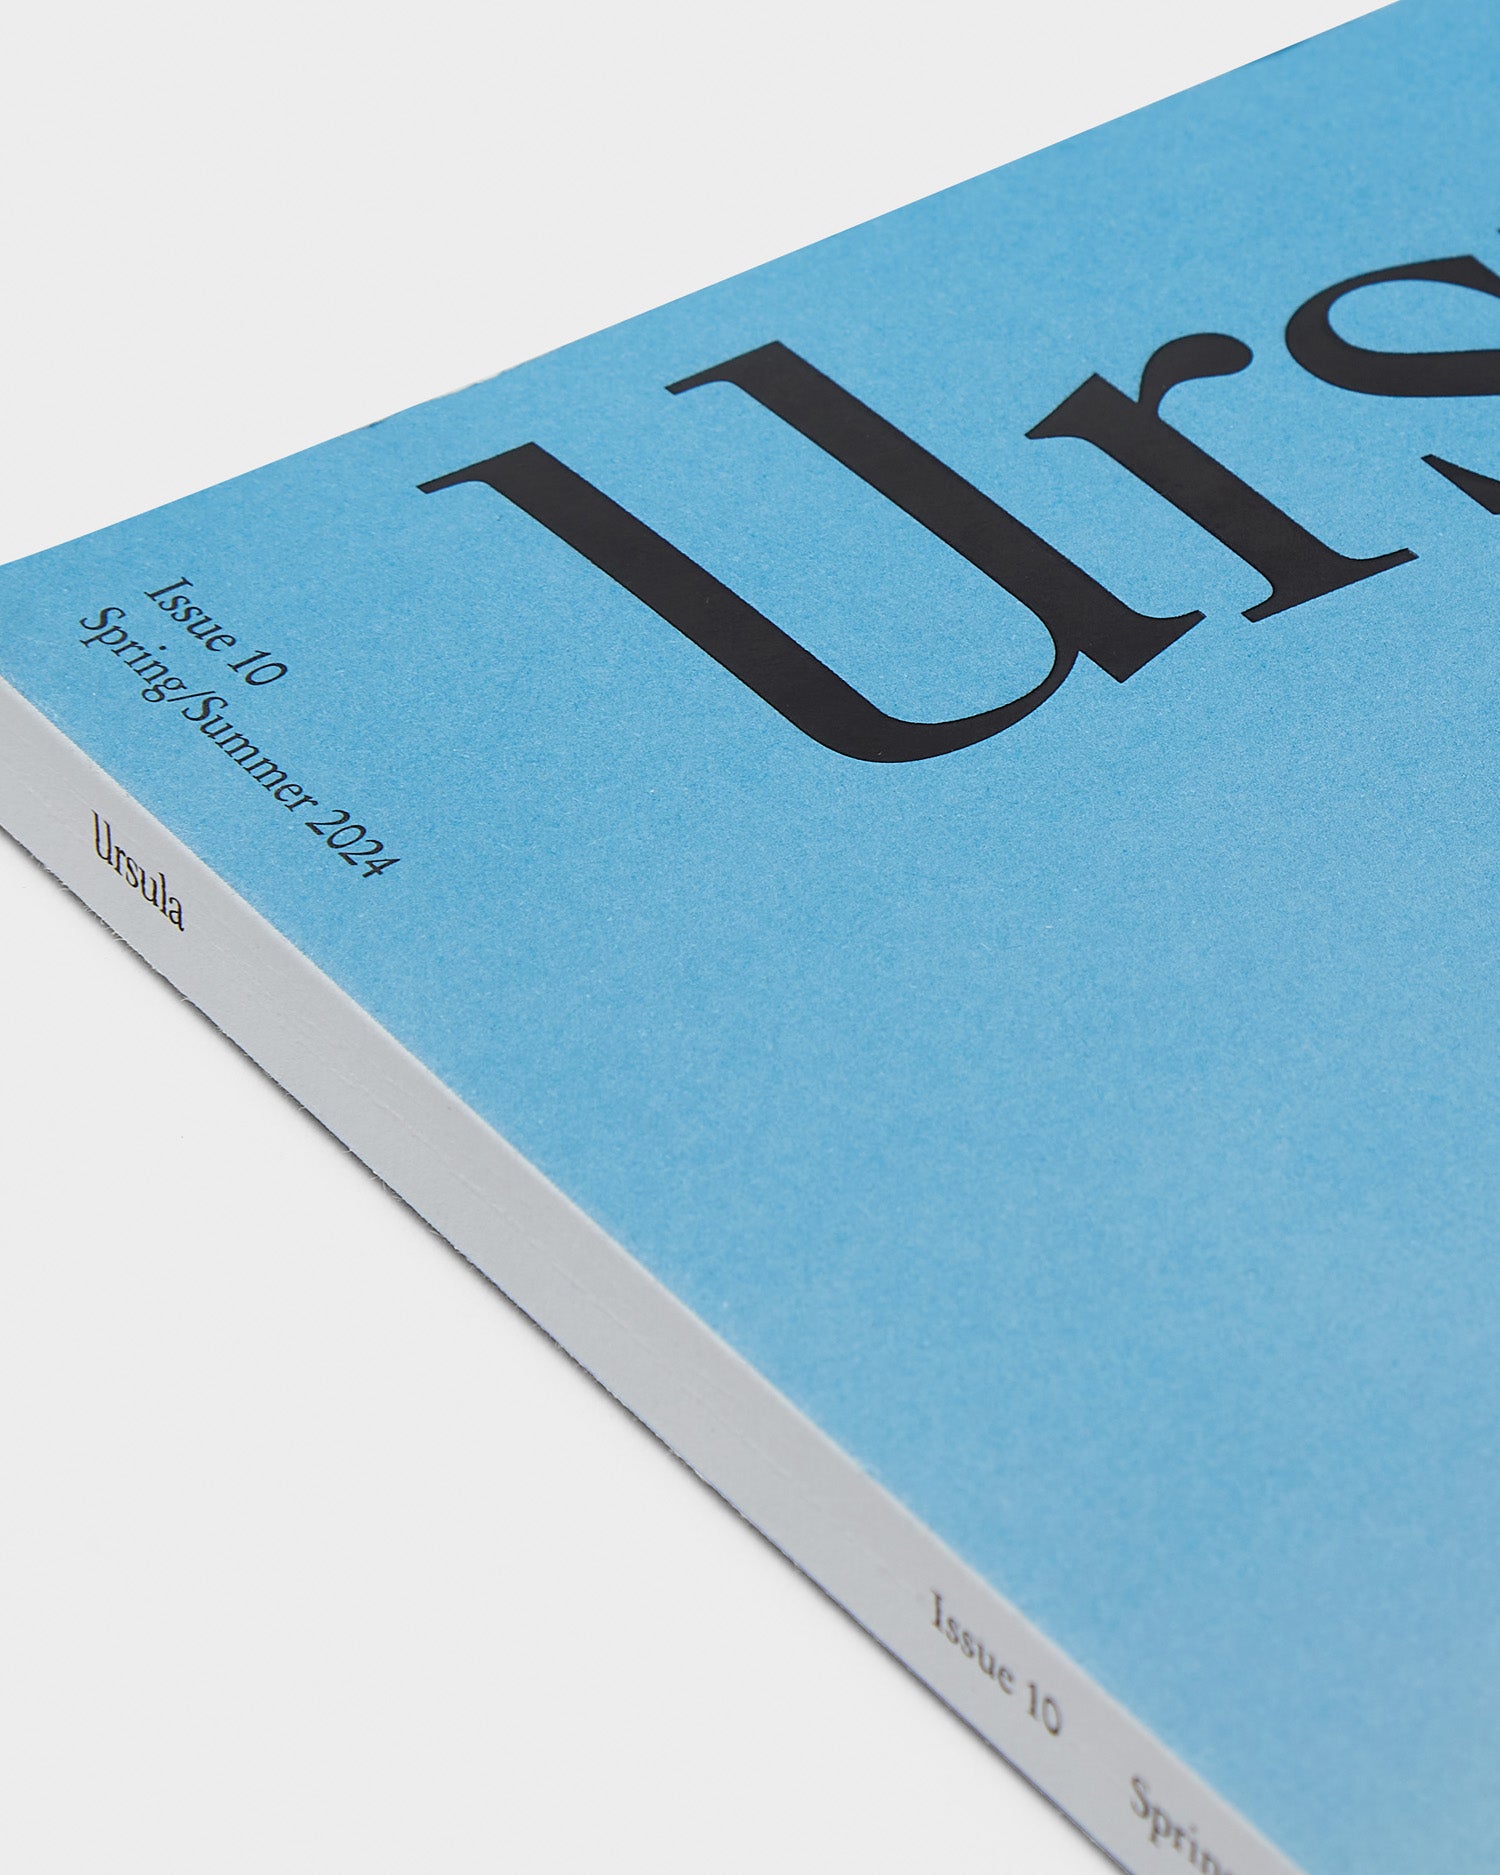 Ursula: Issue 10